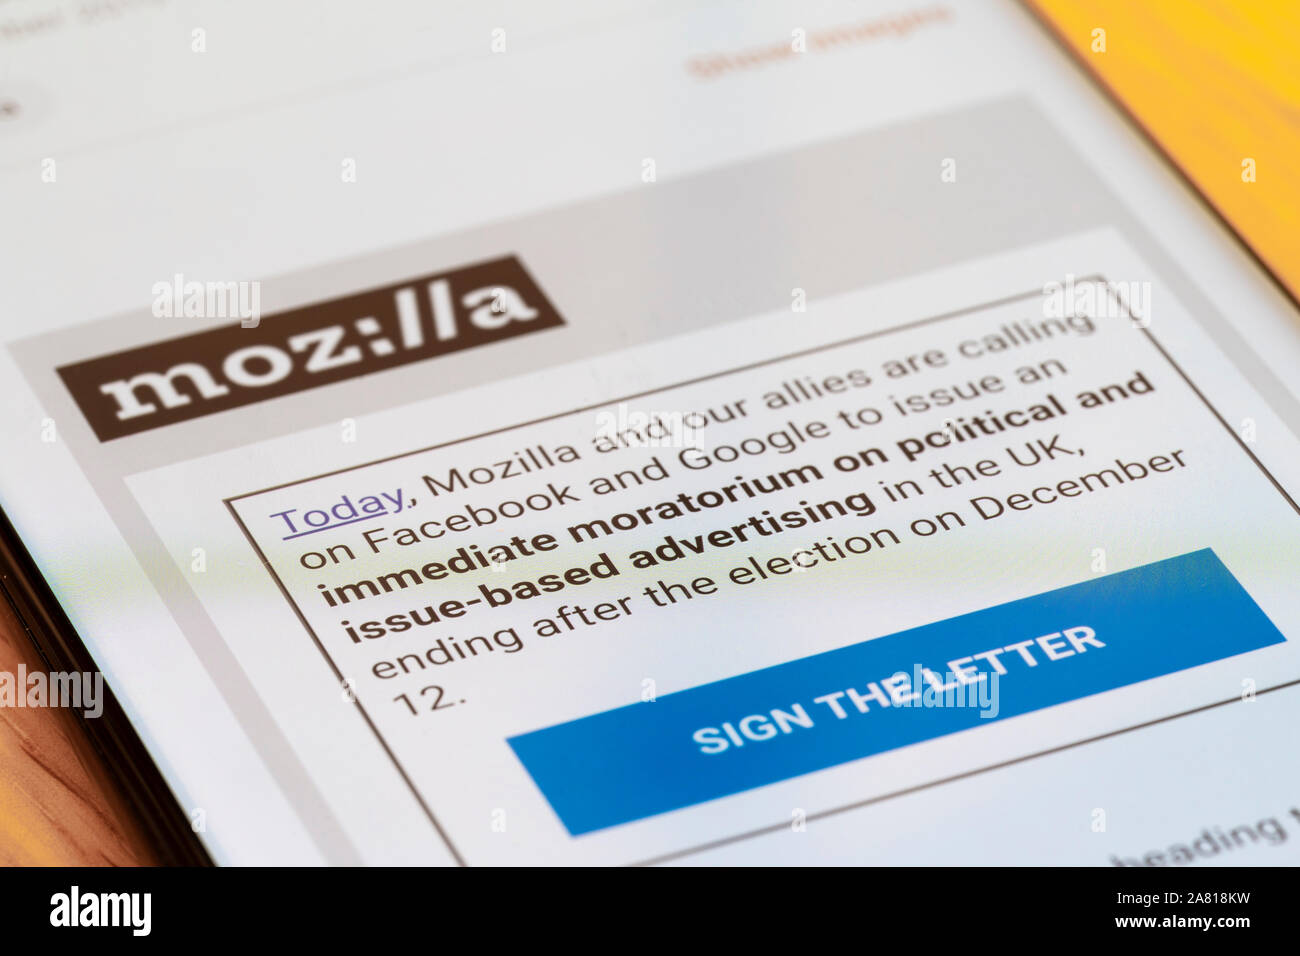 Eine e-Mail Anfrage ein offener Brief von Mozilla, Google und Facebook für ein Verbot politischer Werbung vor der BRITISCHEN allgemeinen Wahl zu unterzeichnen Stockfoto